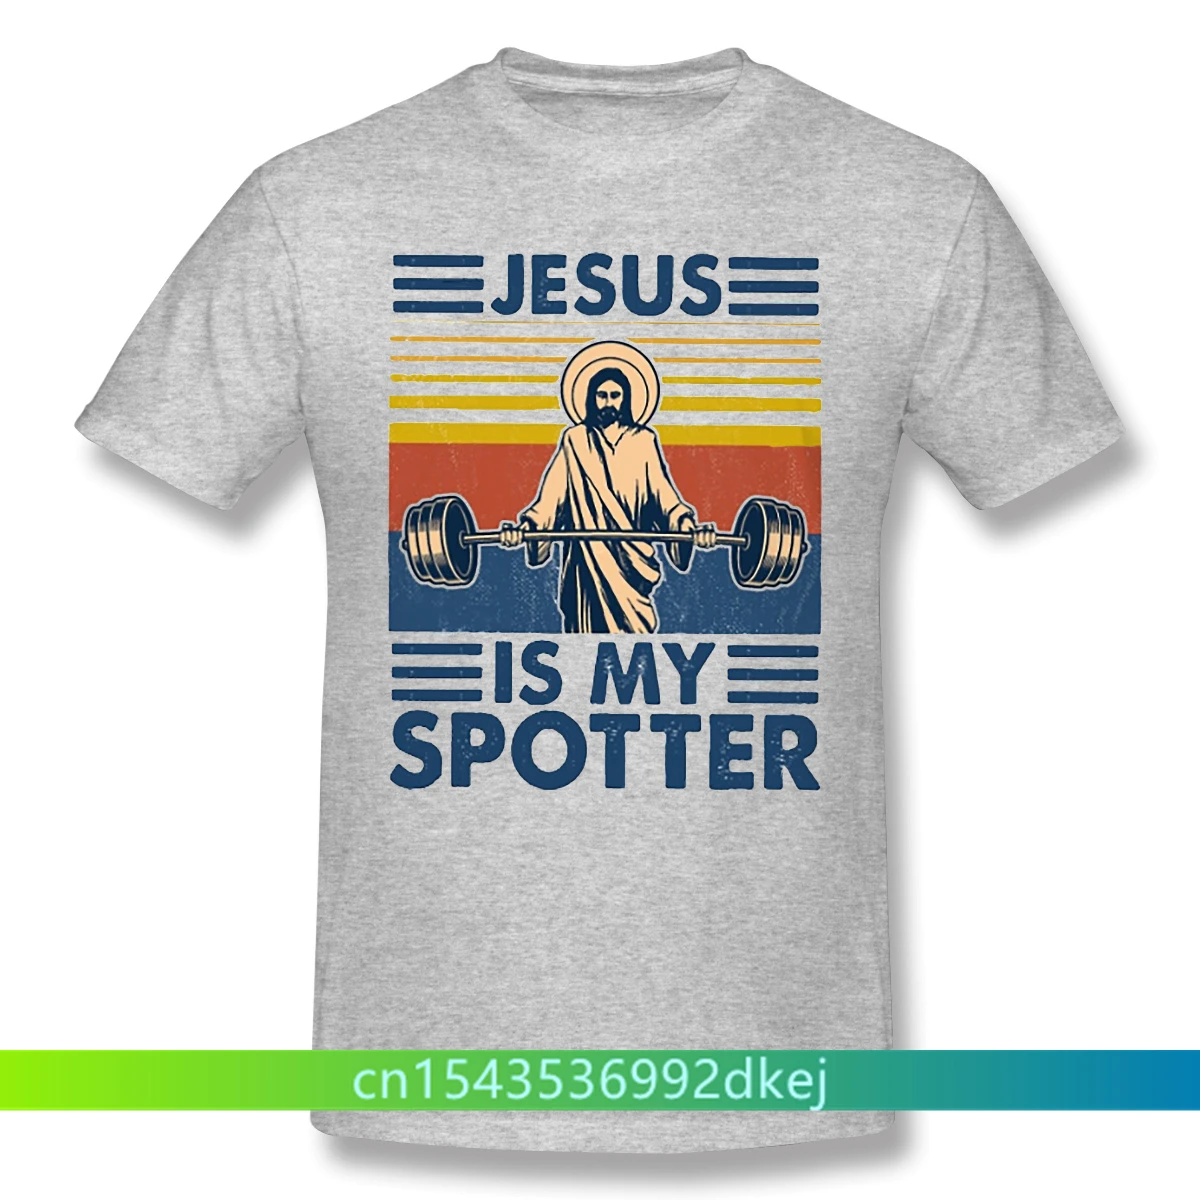 

Мужская Тренировочная черная футболка для бодибилдинга, кроссфита, фитнеса, с изображением Иисуса и моих зрителей, футболки из чистого хлоп...